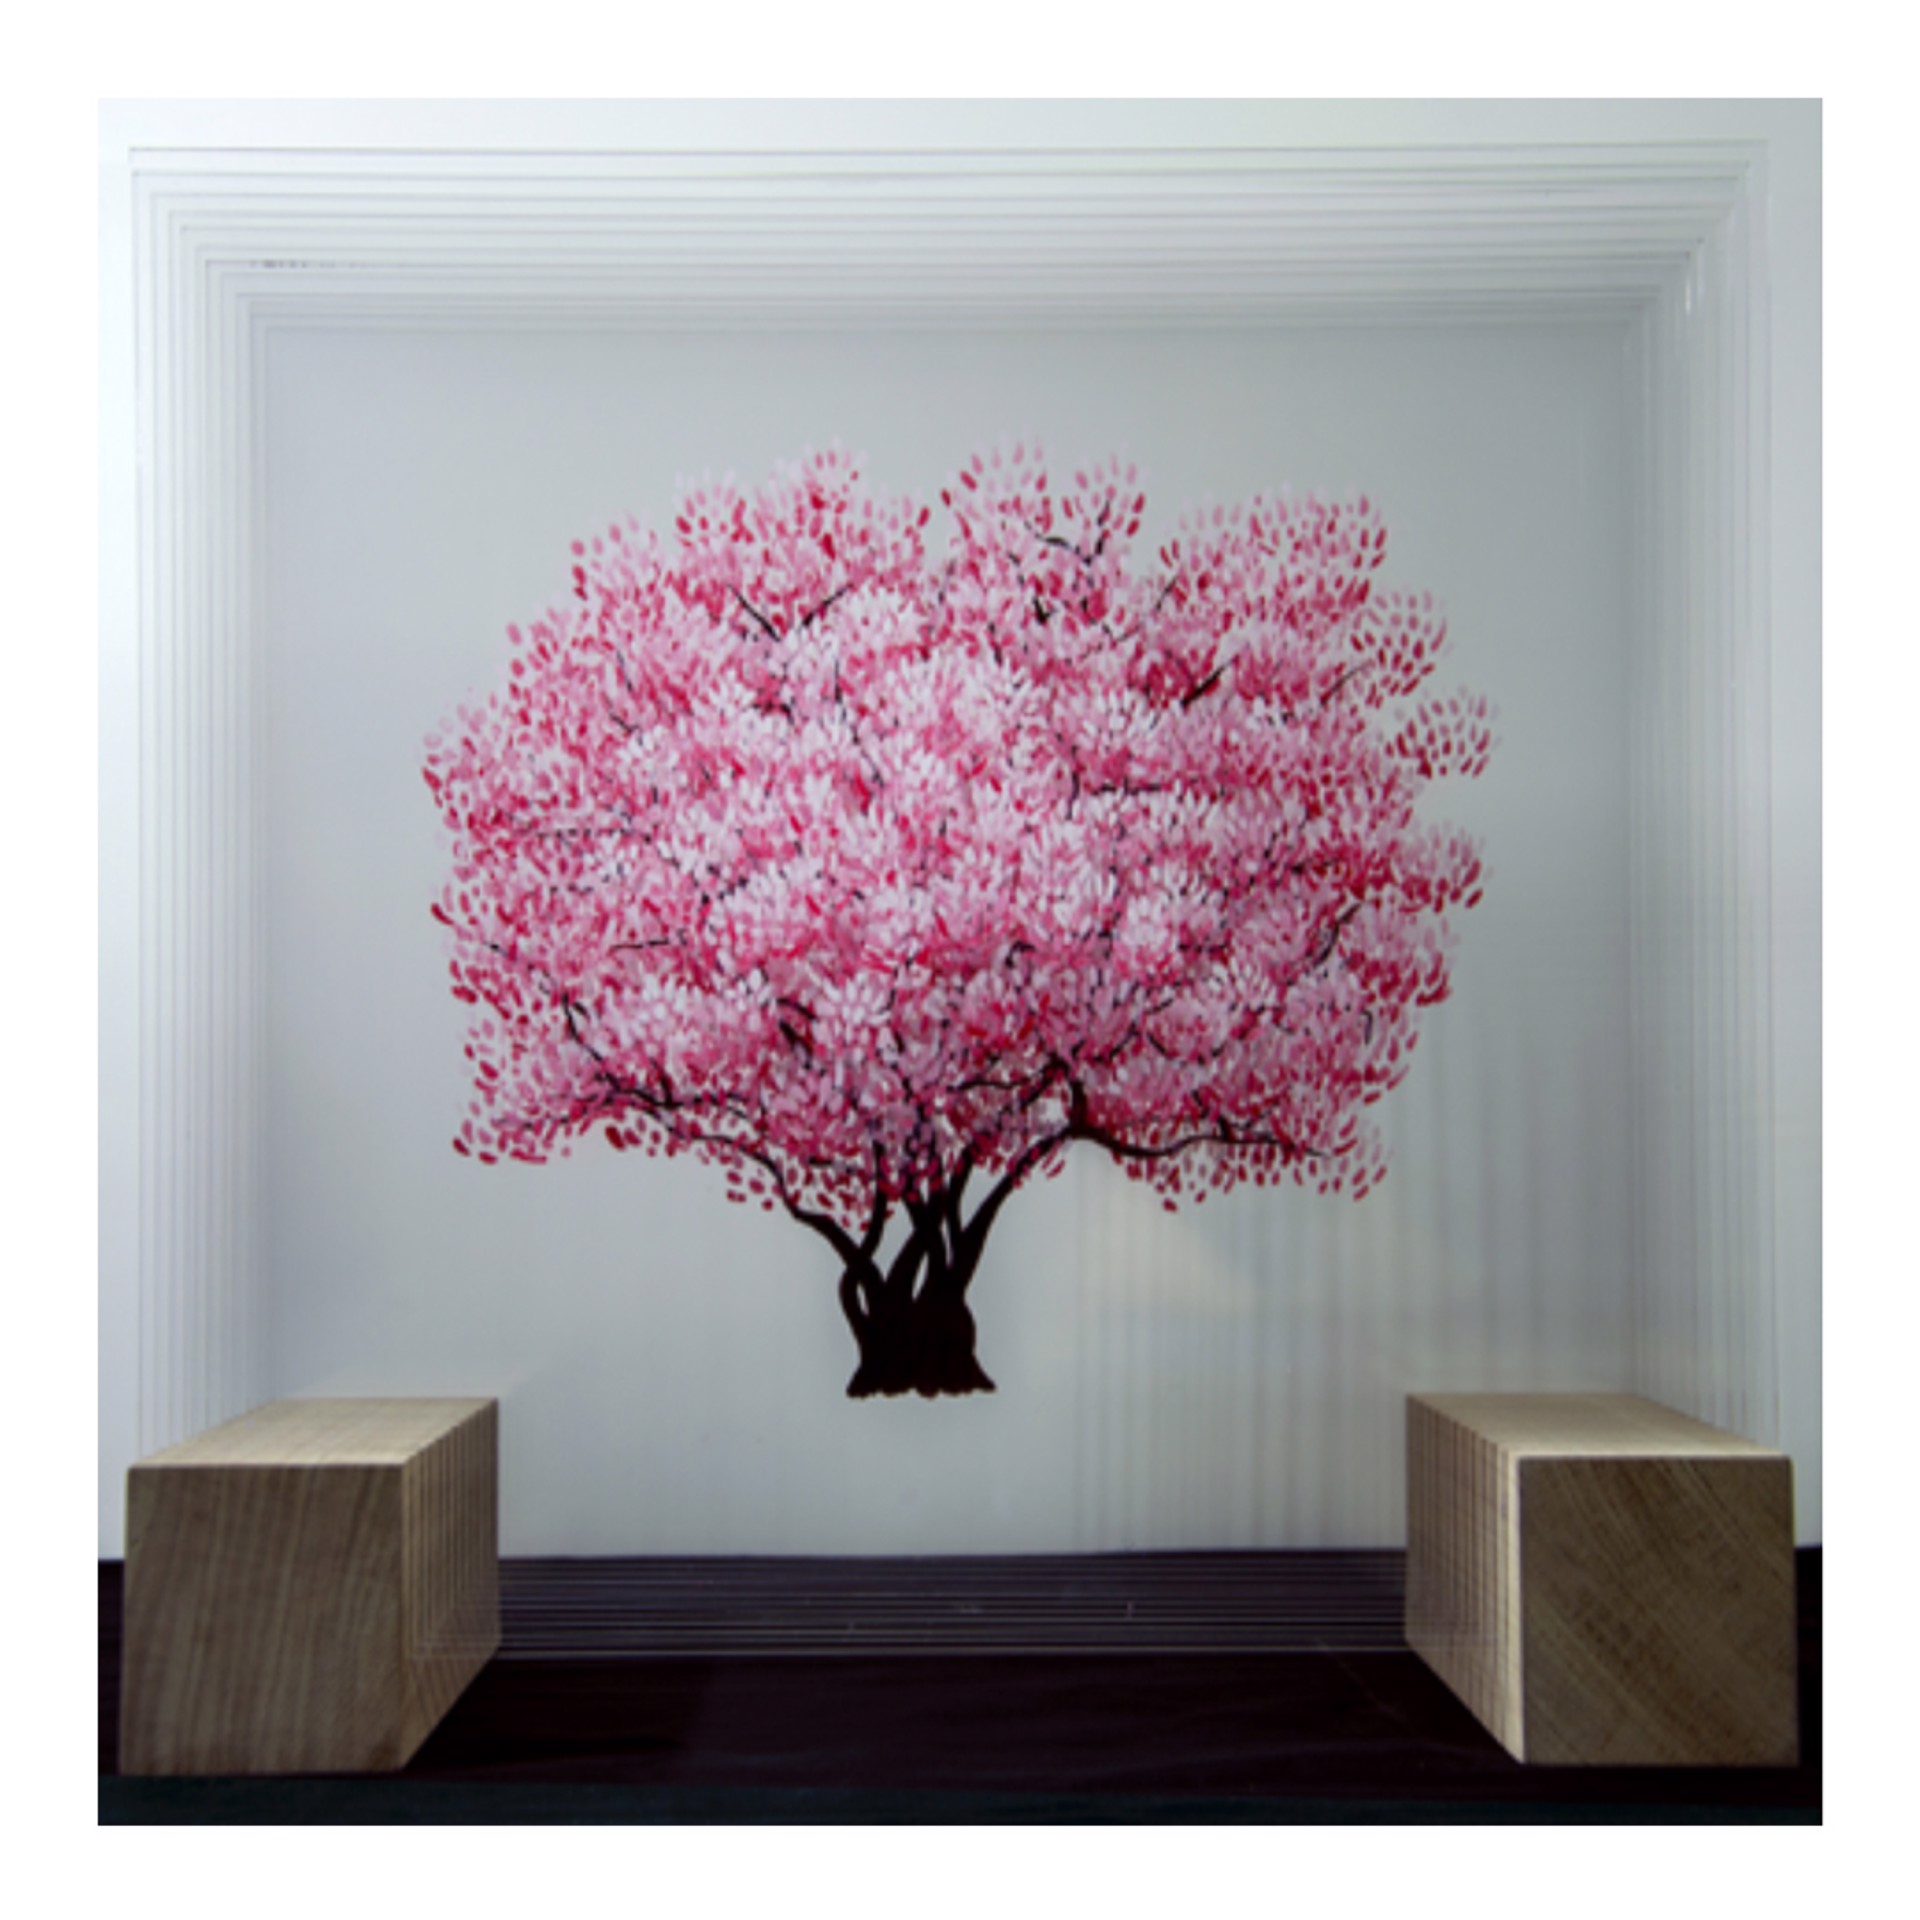 Pink Magnolia 1 by Rémy de Haenen